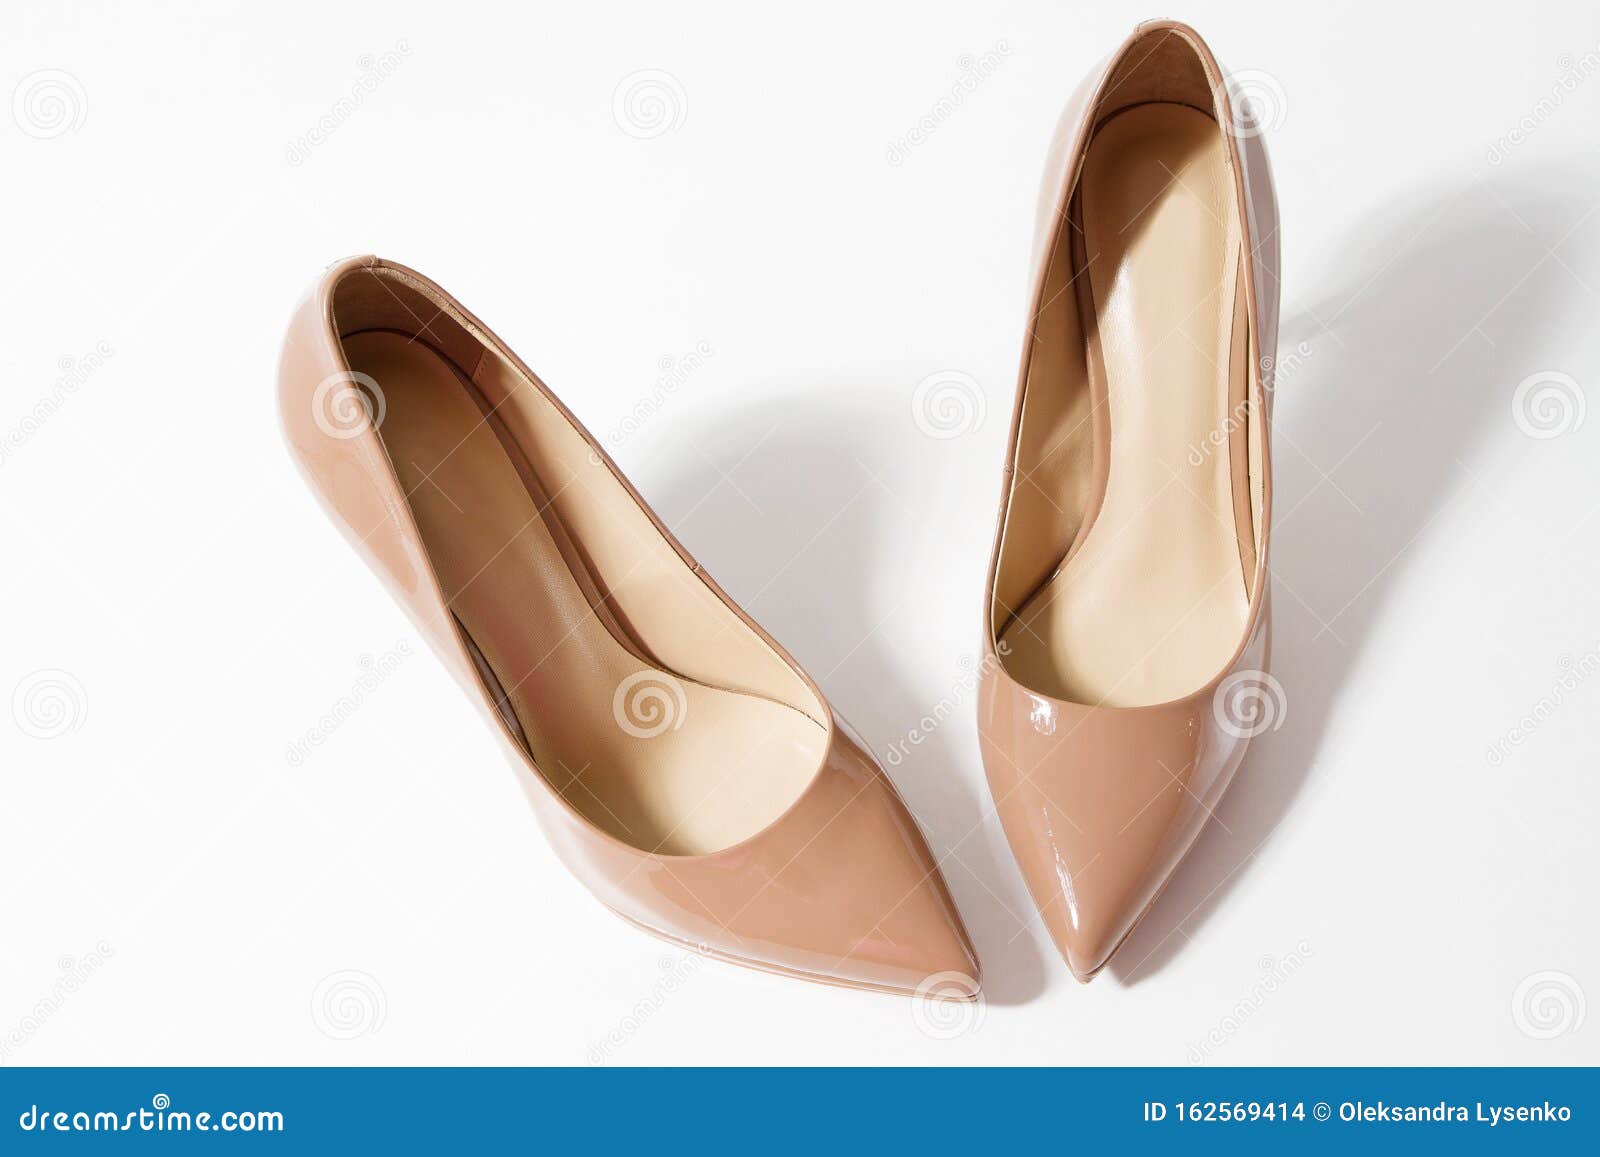 beige color shoes